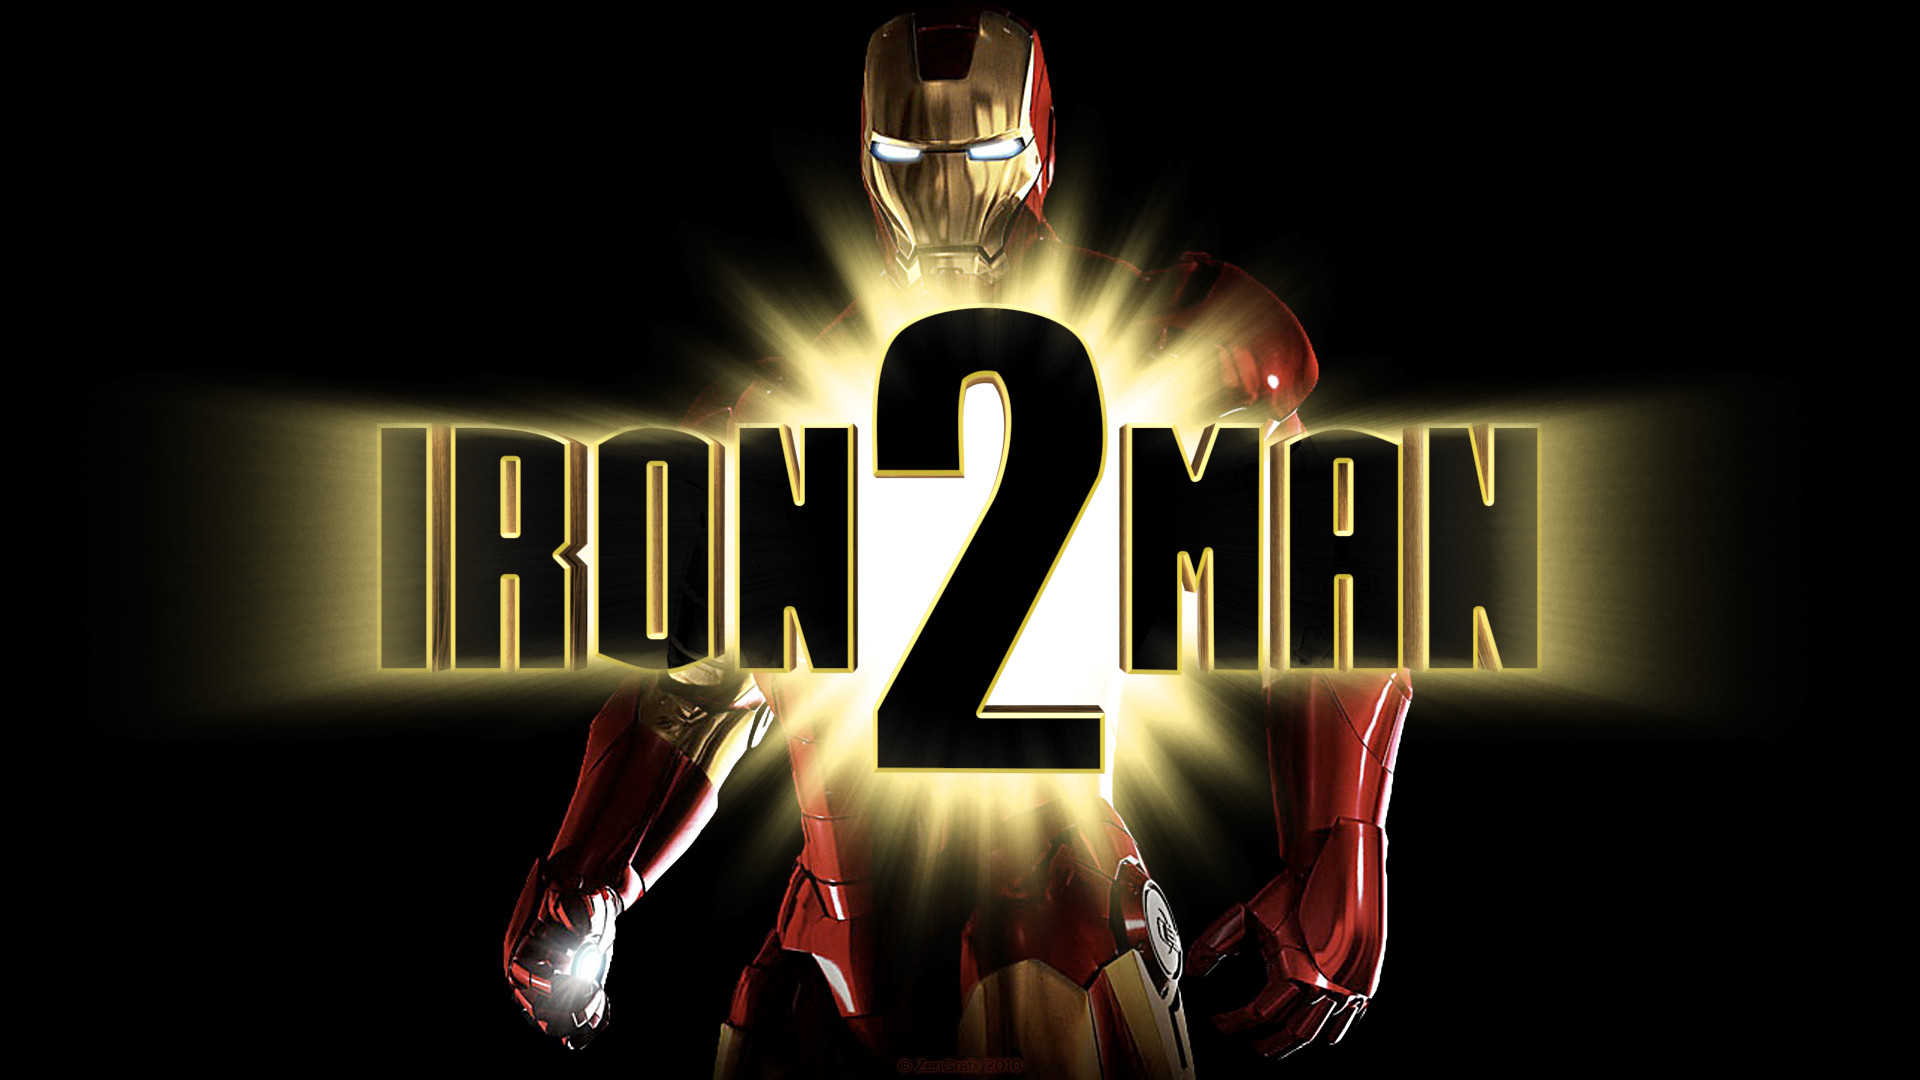 Descarga gratuita de fondo de pantalla para móvil de Iron Man 2, Tony Stark, Hombre De Acero, Películas, Iron Man.